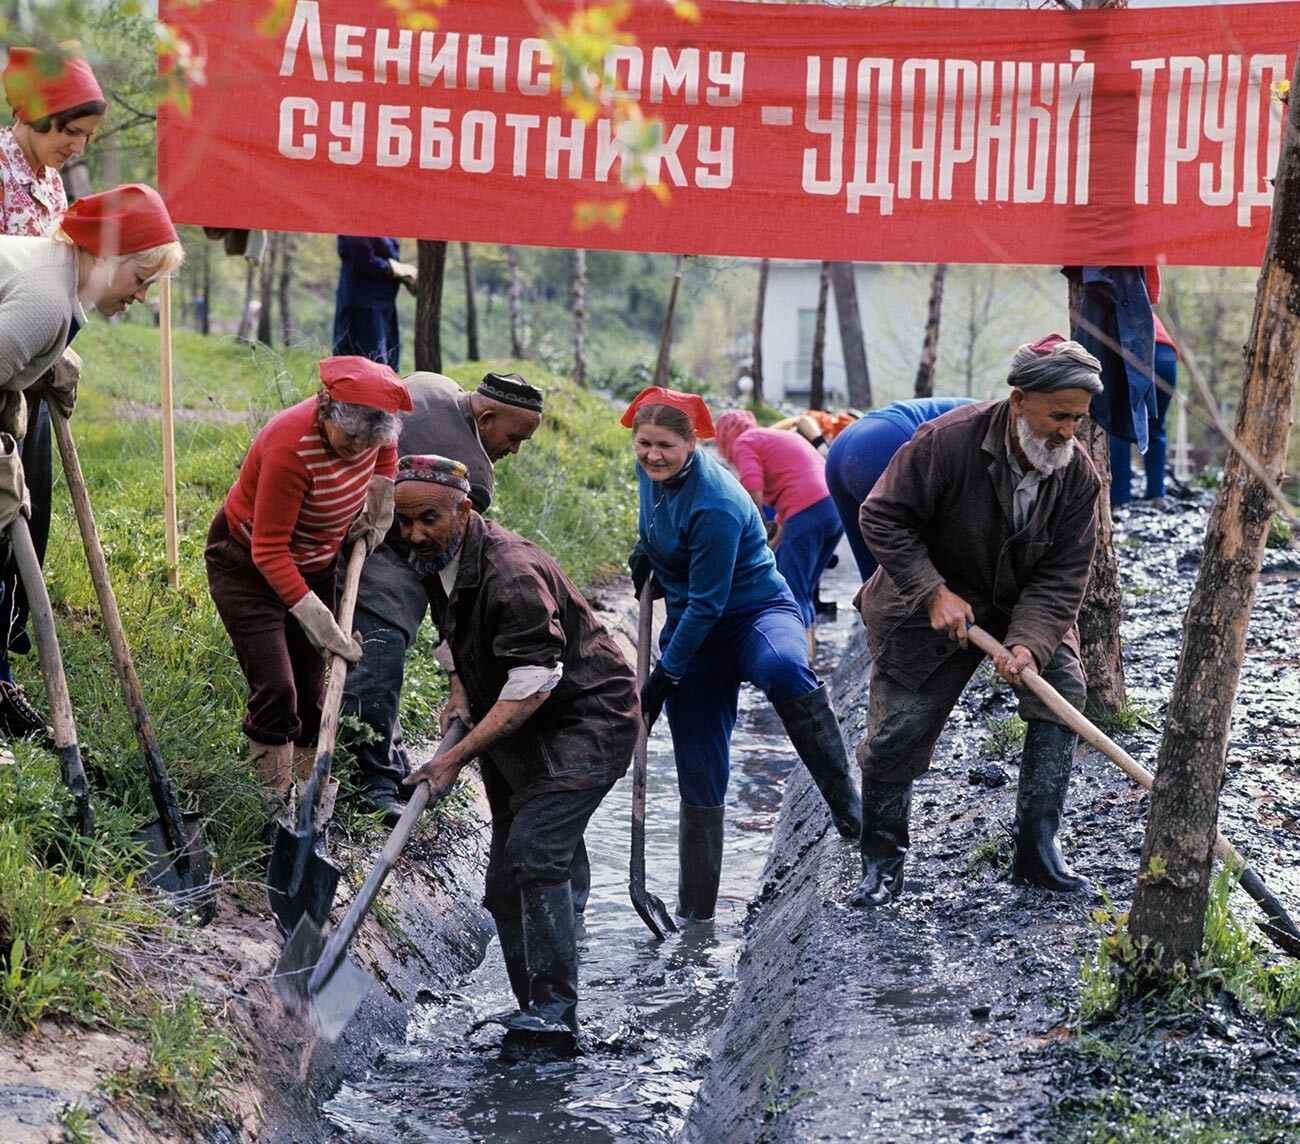 Residentes de la ciudad en el 'subbótnik' comunista Lenin.